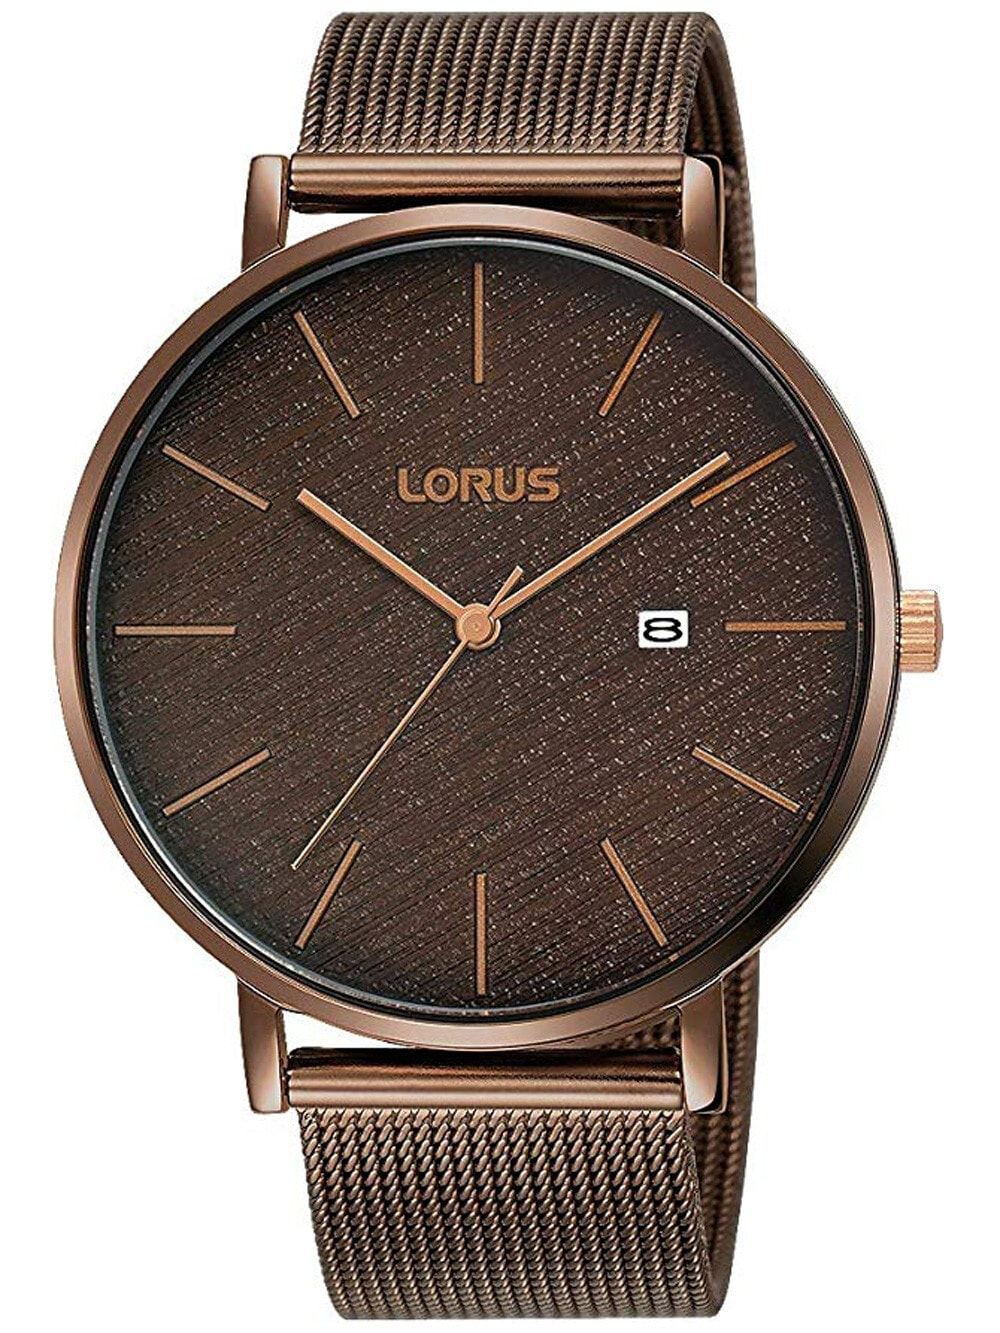 Мужские наручные часы с бронзовым браслетом Lorus RH913LX9 Classic Mens 42mm 3ATM